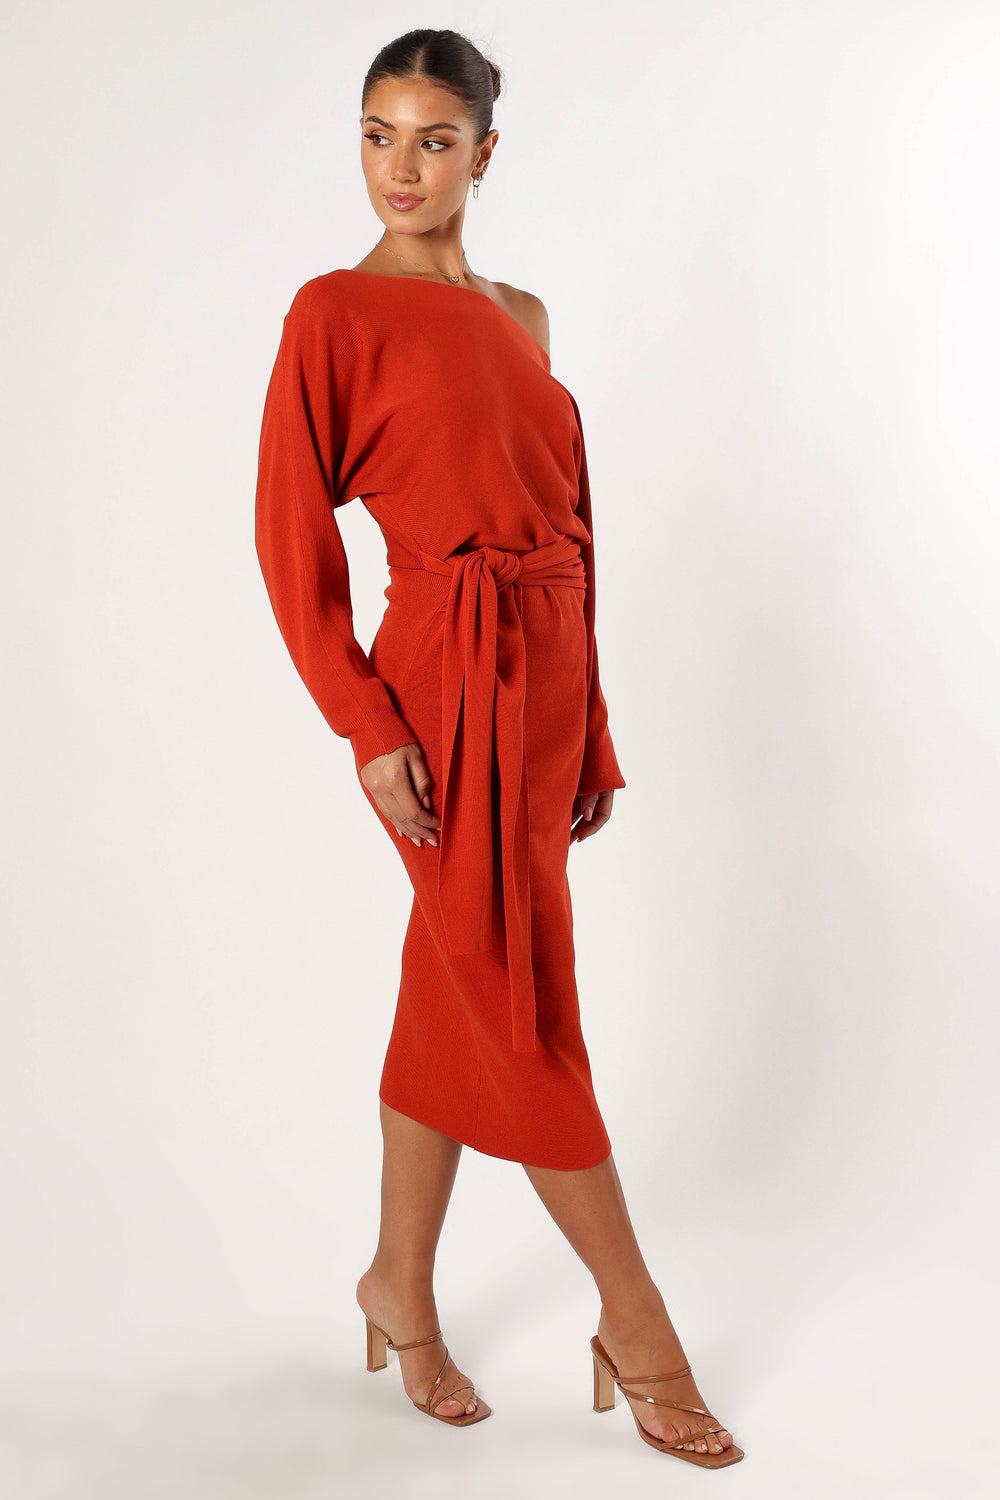 Prancer Off Shoulder Midi Dress - Red - Petal & Pup USA